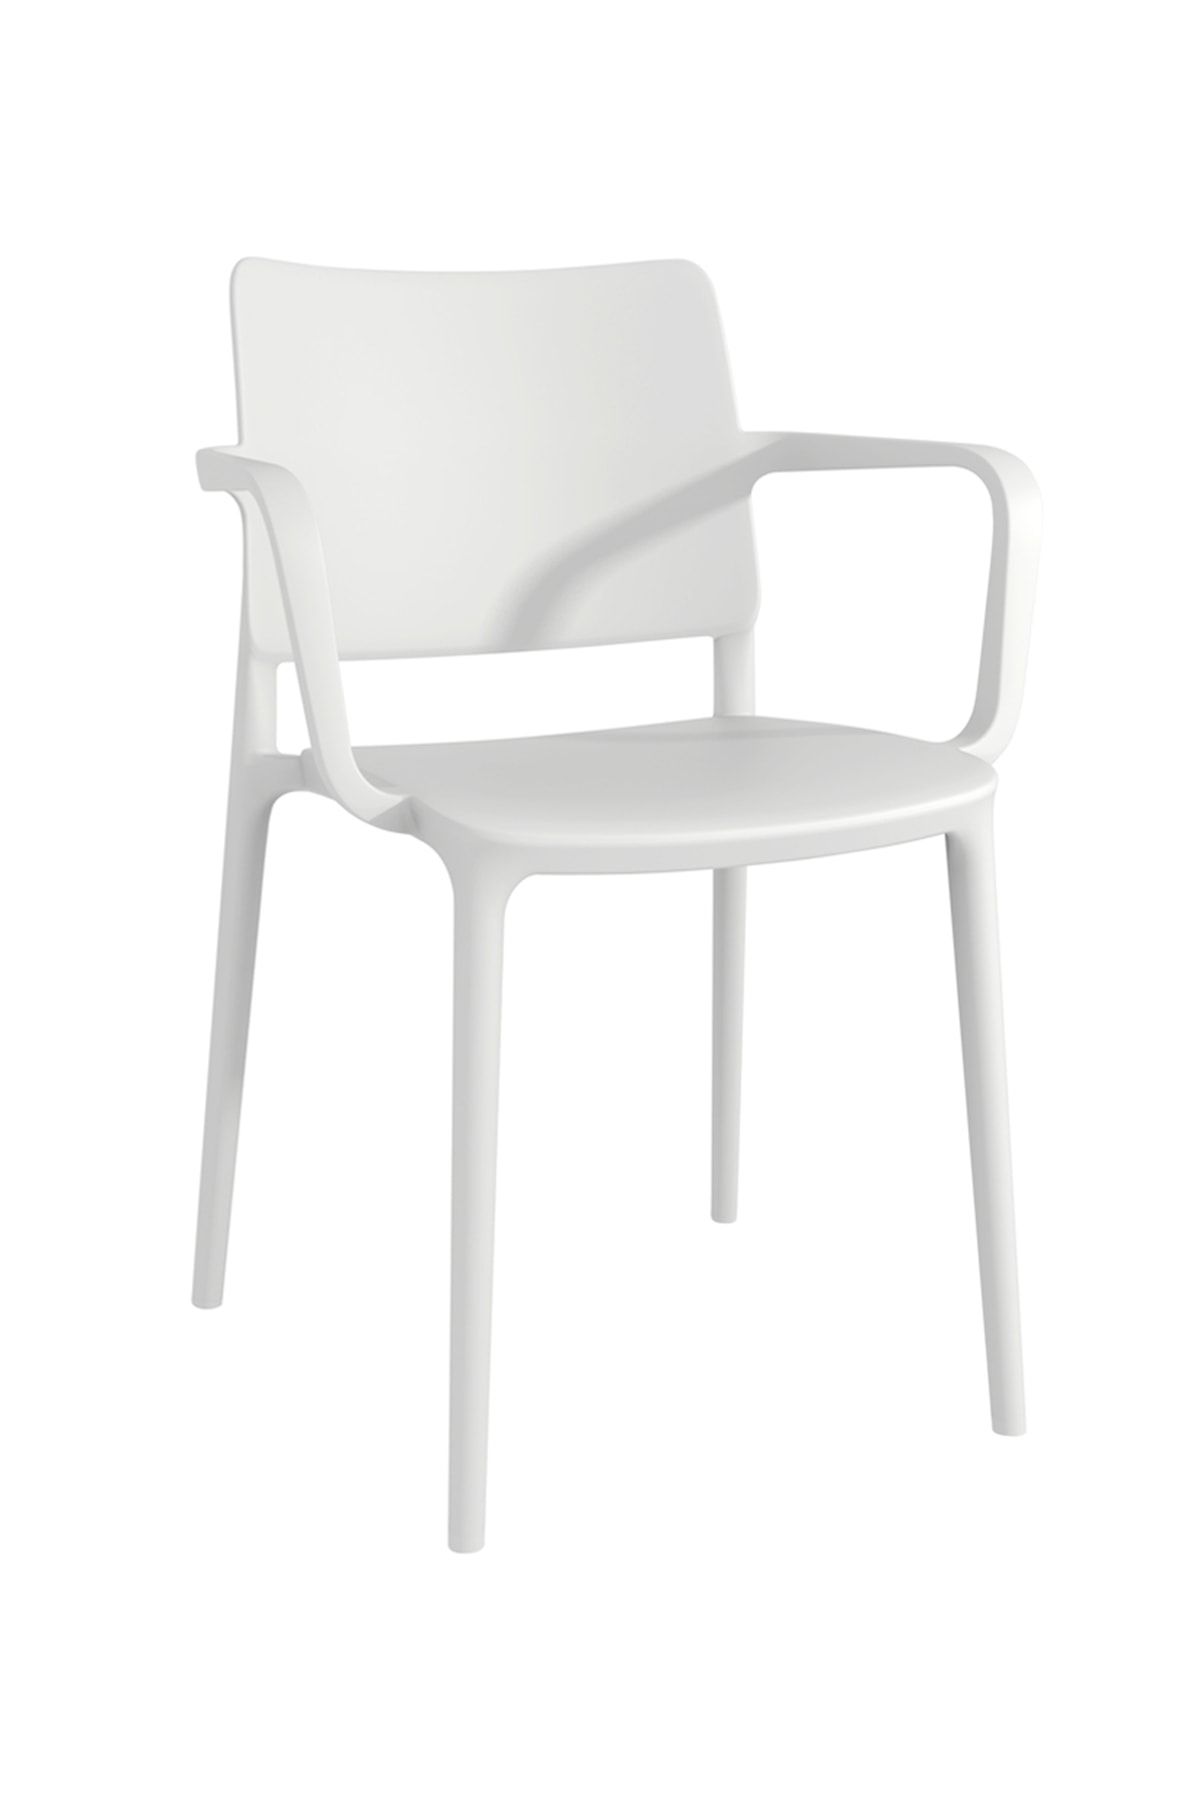 Papatya Joy Koltuk Beyaz - Mutfak Sandalyesi - Kolçaklı